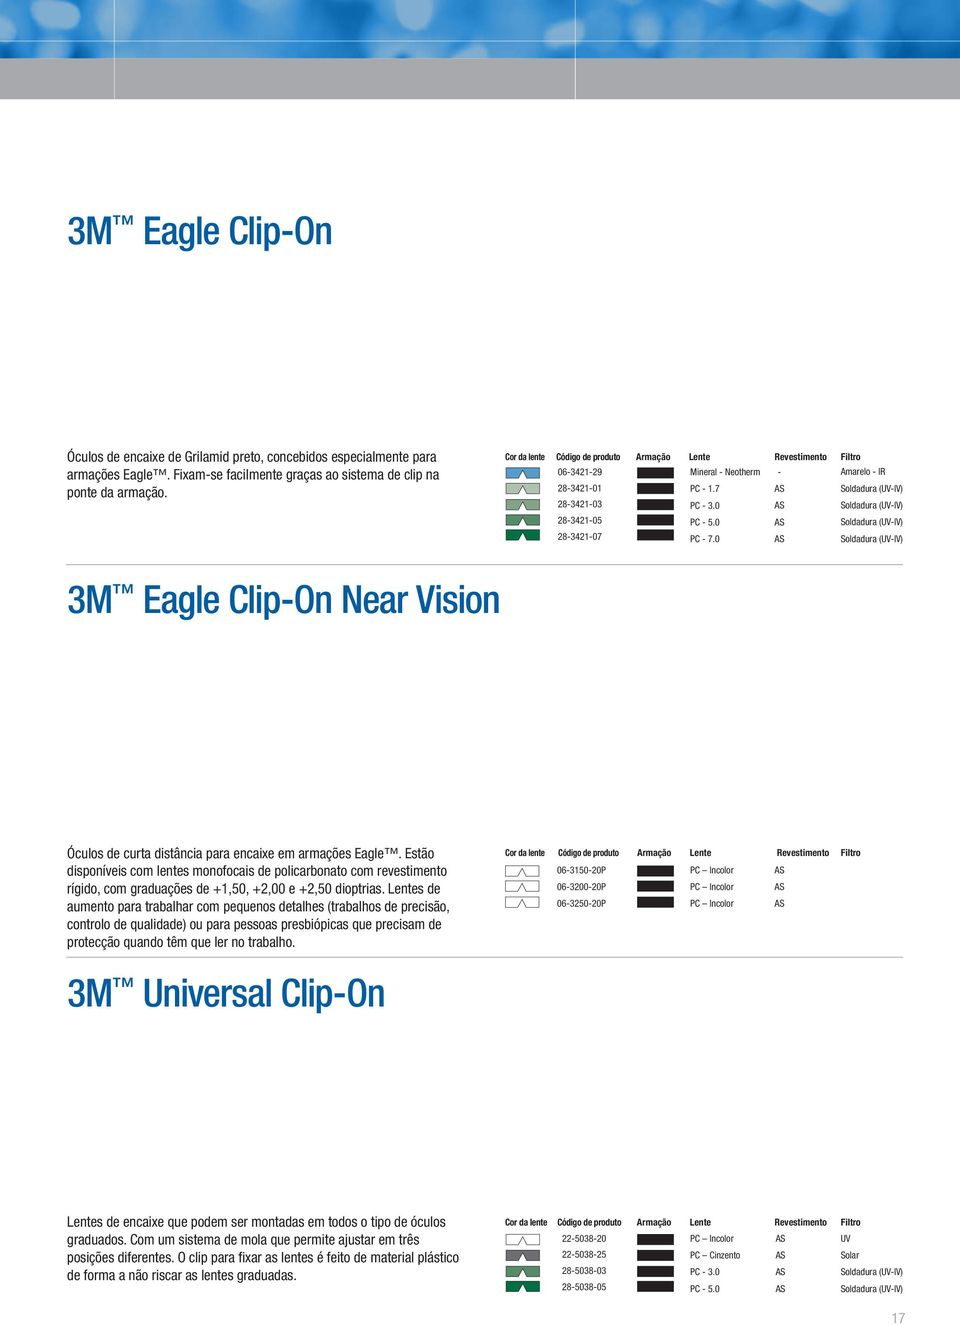 0 - Amarelo - IR Soldadura (-IV) Soldadura (-IV) Soldadura (-IV) Soldadura (-IV) 3M Eagle Clip-On Near Vision Óculos de curta distância para encaie em armações Eagle.